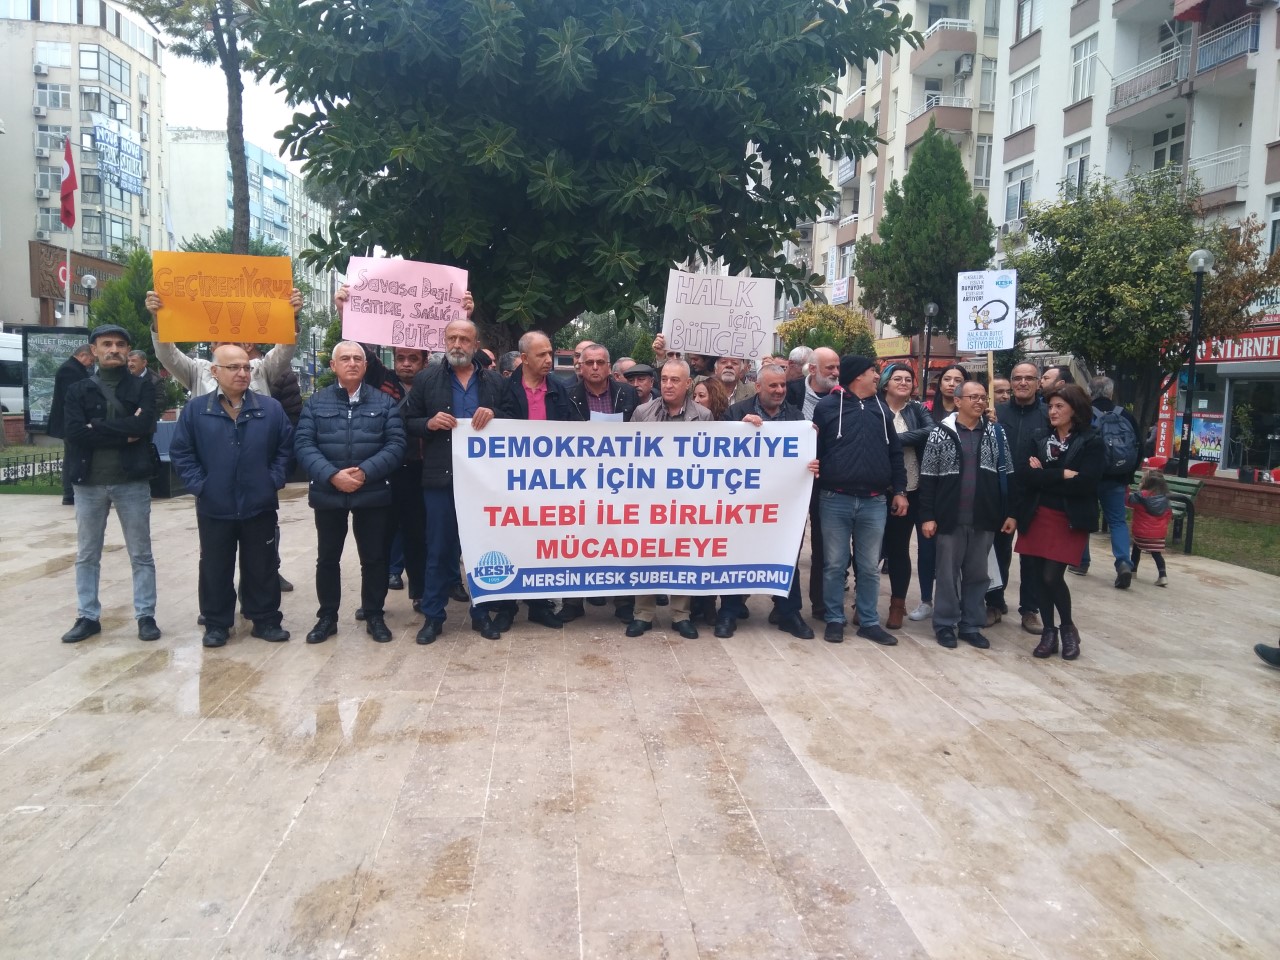 KESK Mersin Şubeler Platformu’ndan “Demokratik Türkiye, Halk İçin Bütçe” Mitingine Çağrı